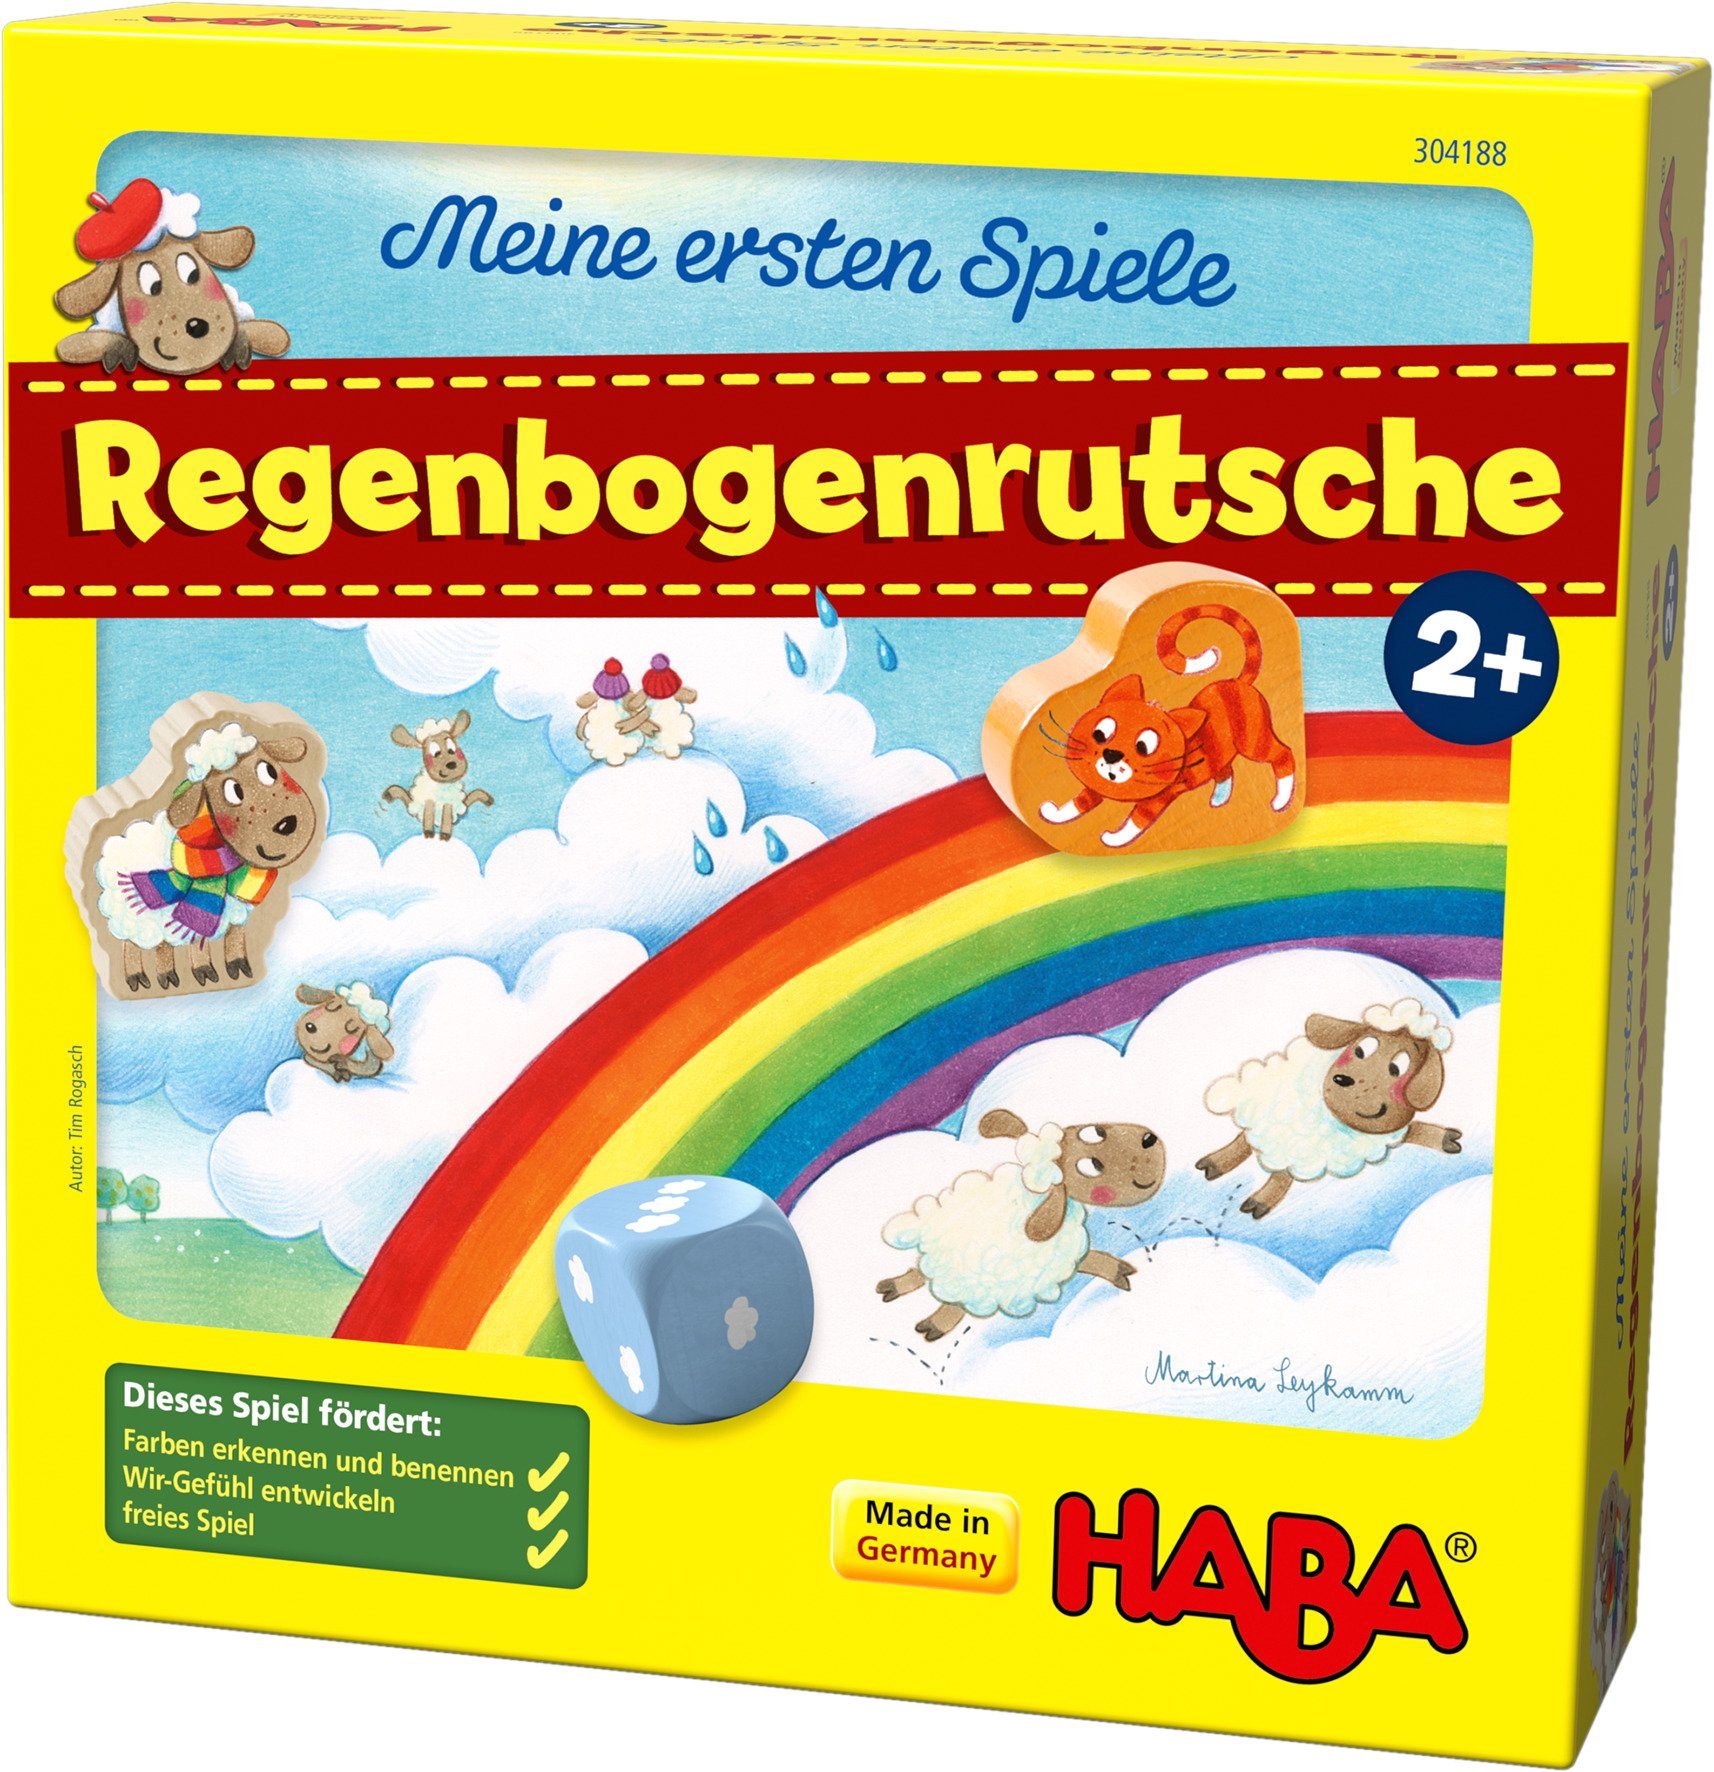 Distilleren Mevrouw Voorvoegsel Haba Spel Mijn eerste spellen - Op de regenboog Made in Germany snel online  gekocht | OTTO